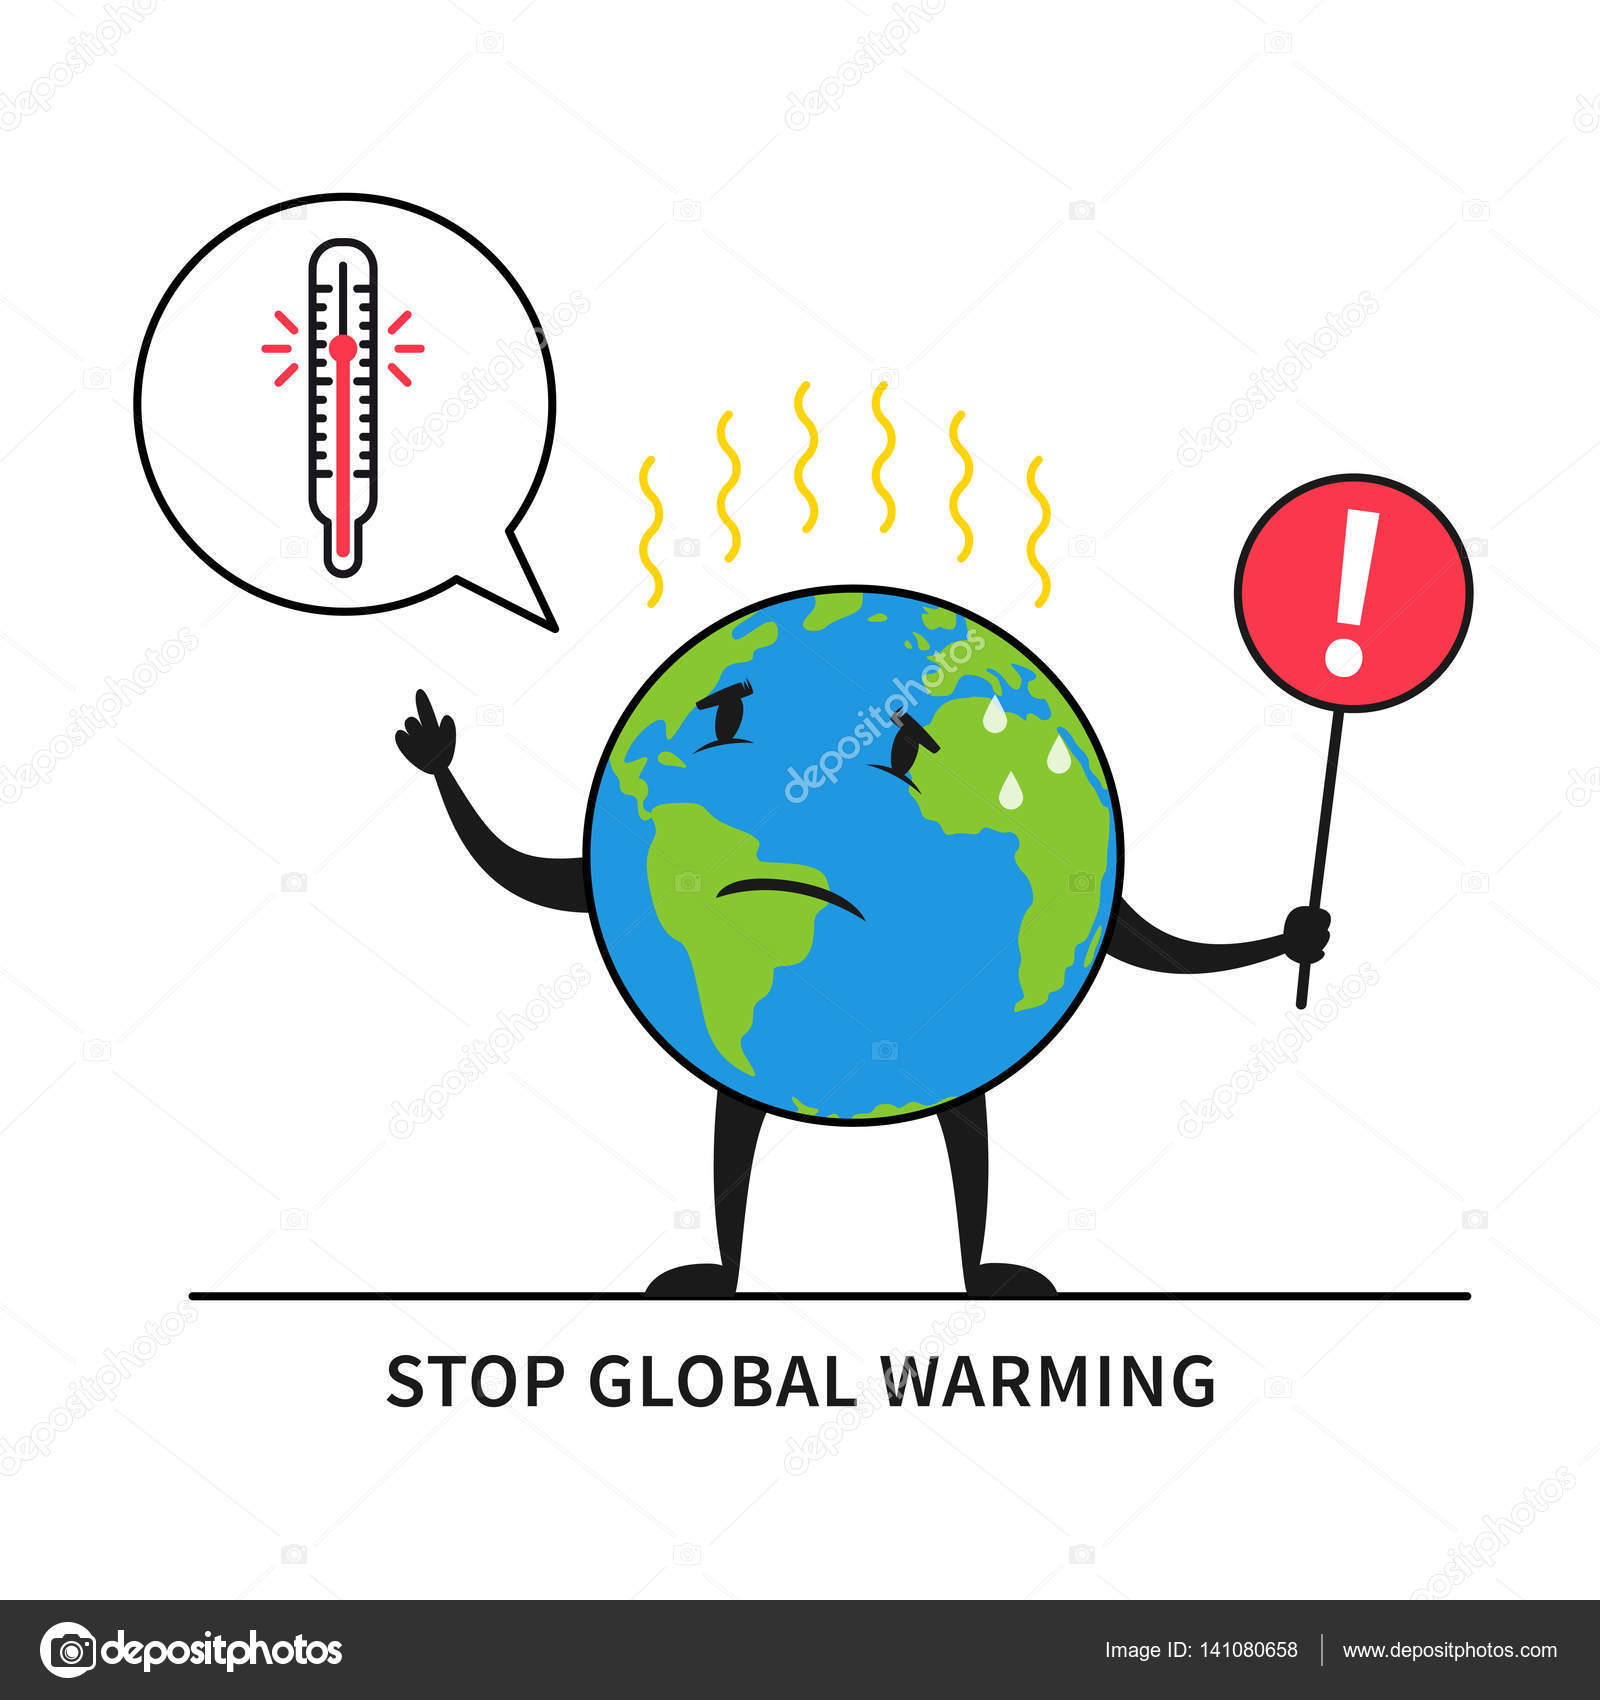 Предотвращение глобального потепления